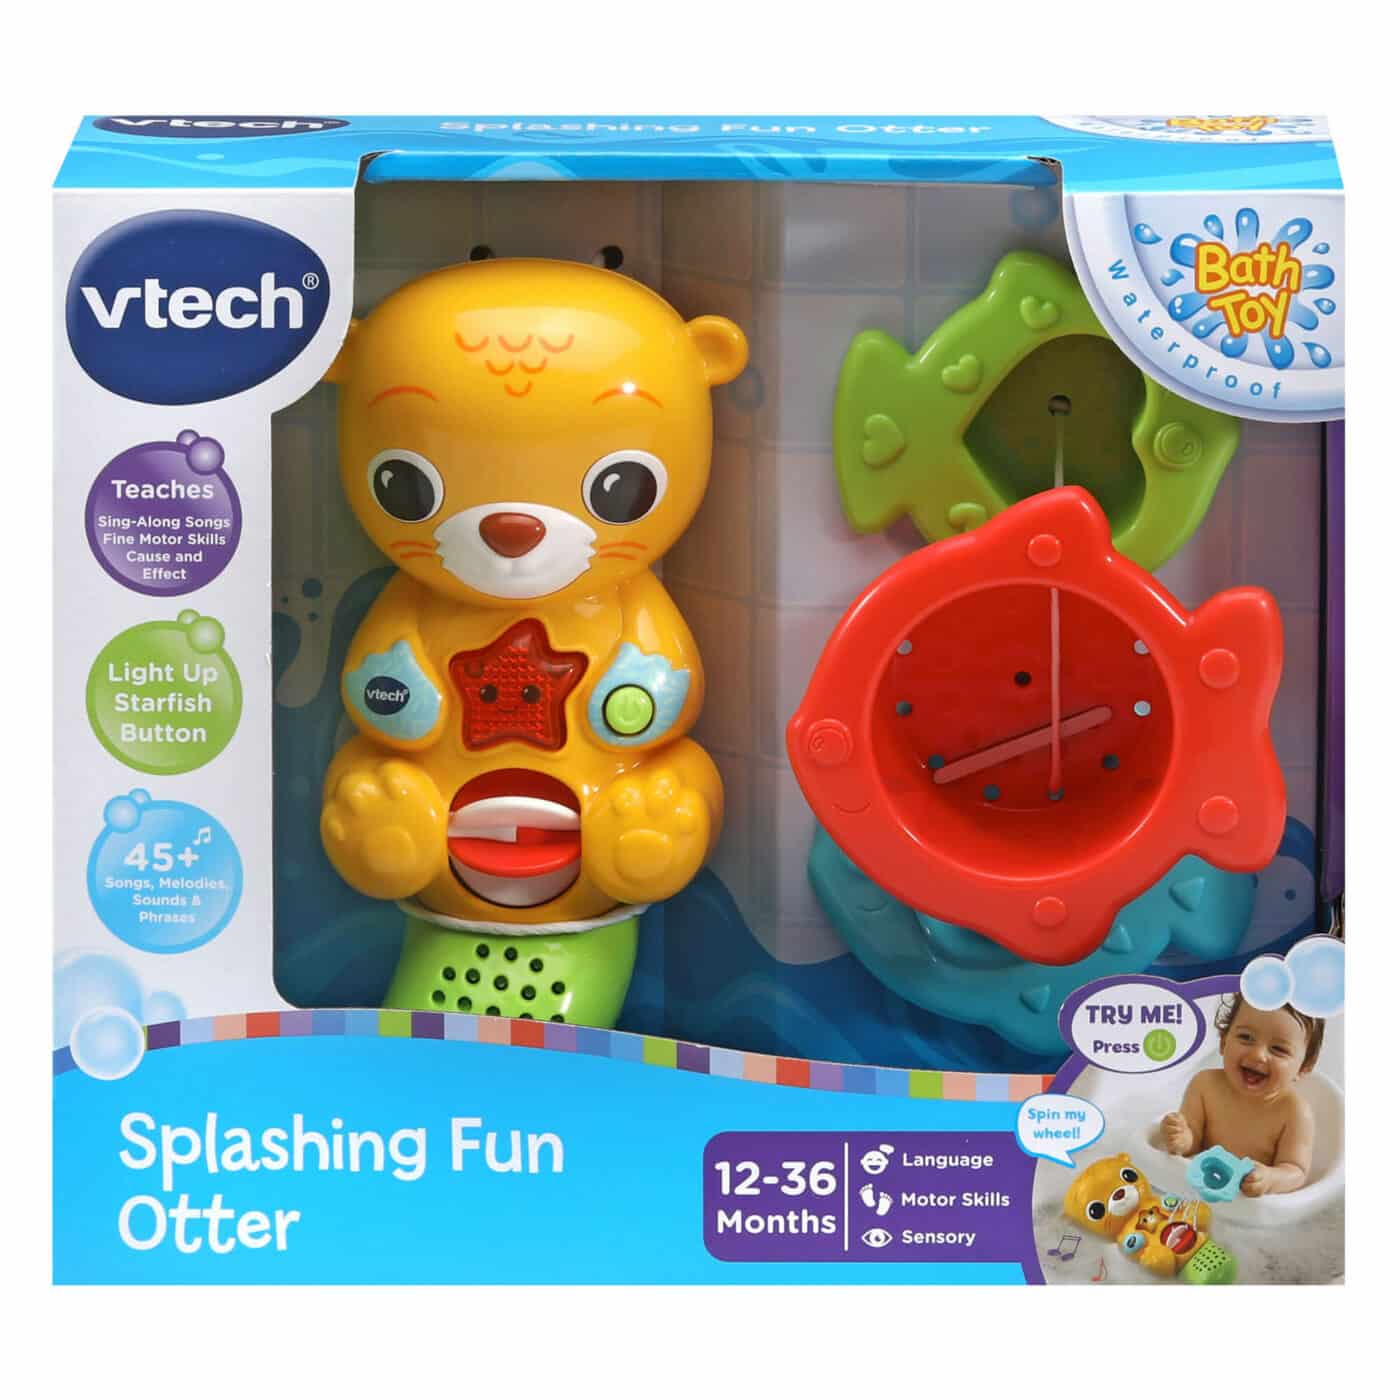 Vtech - Splashing Fun Otter - Bath Toy - Online Toys Australia